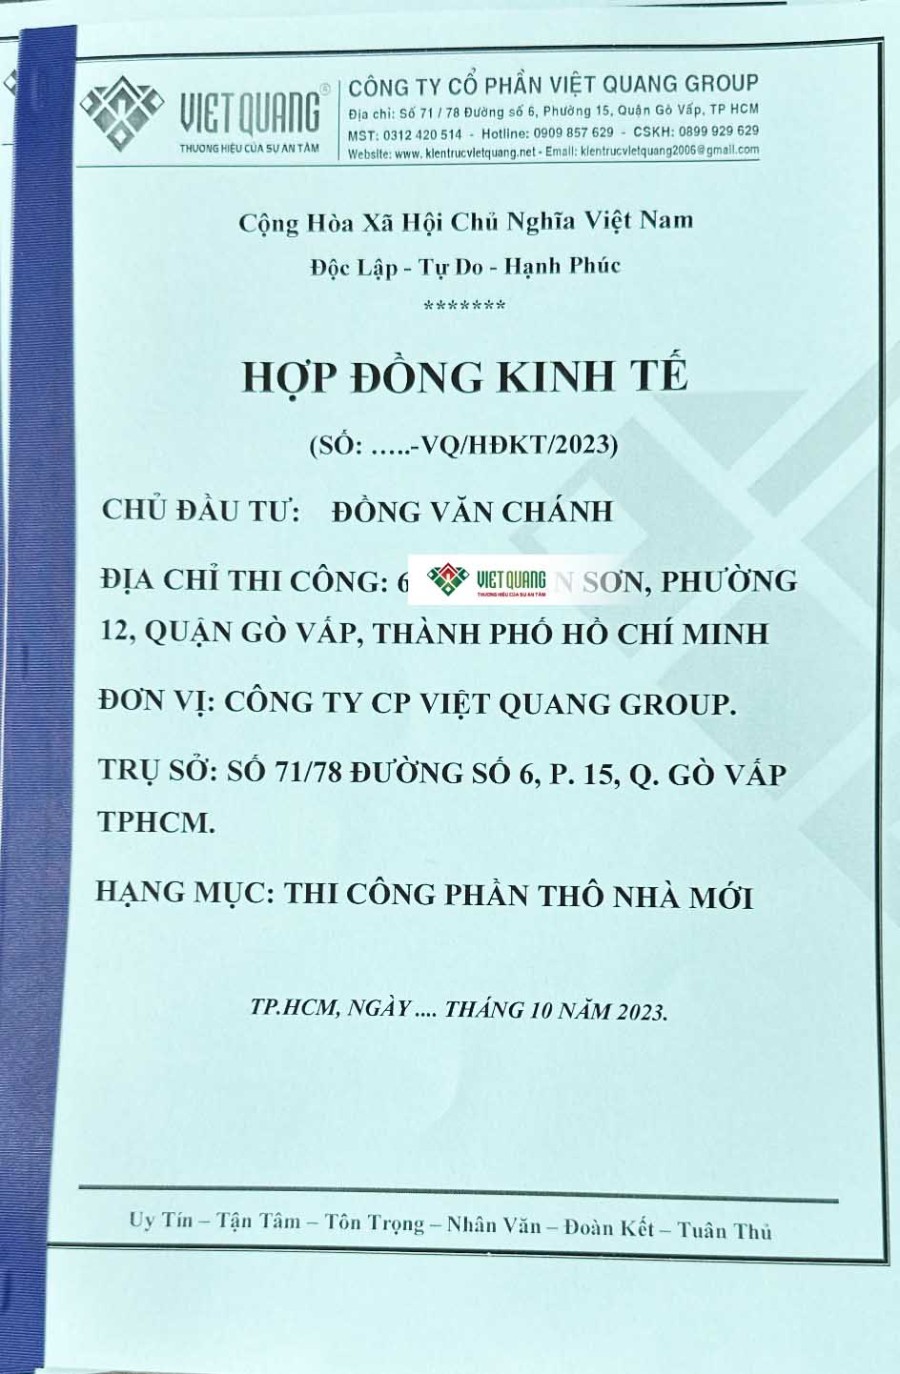 Hình ảnh bìa hồ sơ ký hợp đồng kinh tế giữa Anh Chánh ở Quận Gò Vấp với Xây Dựng Việt Quang